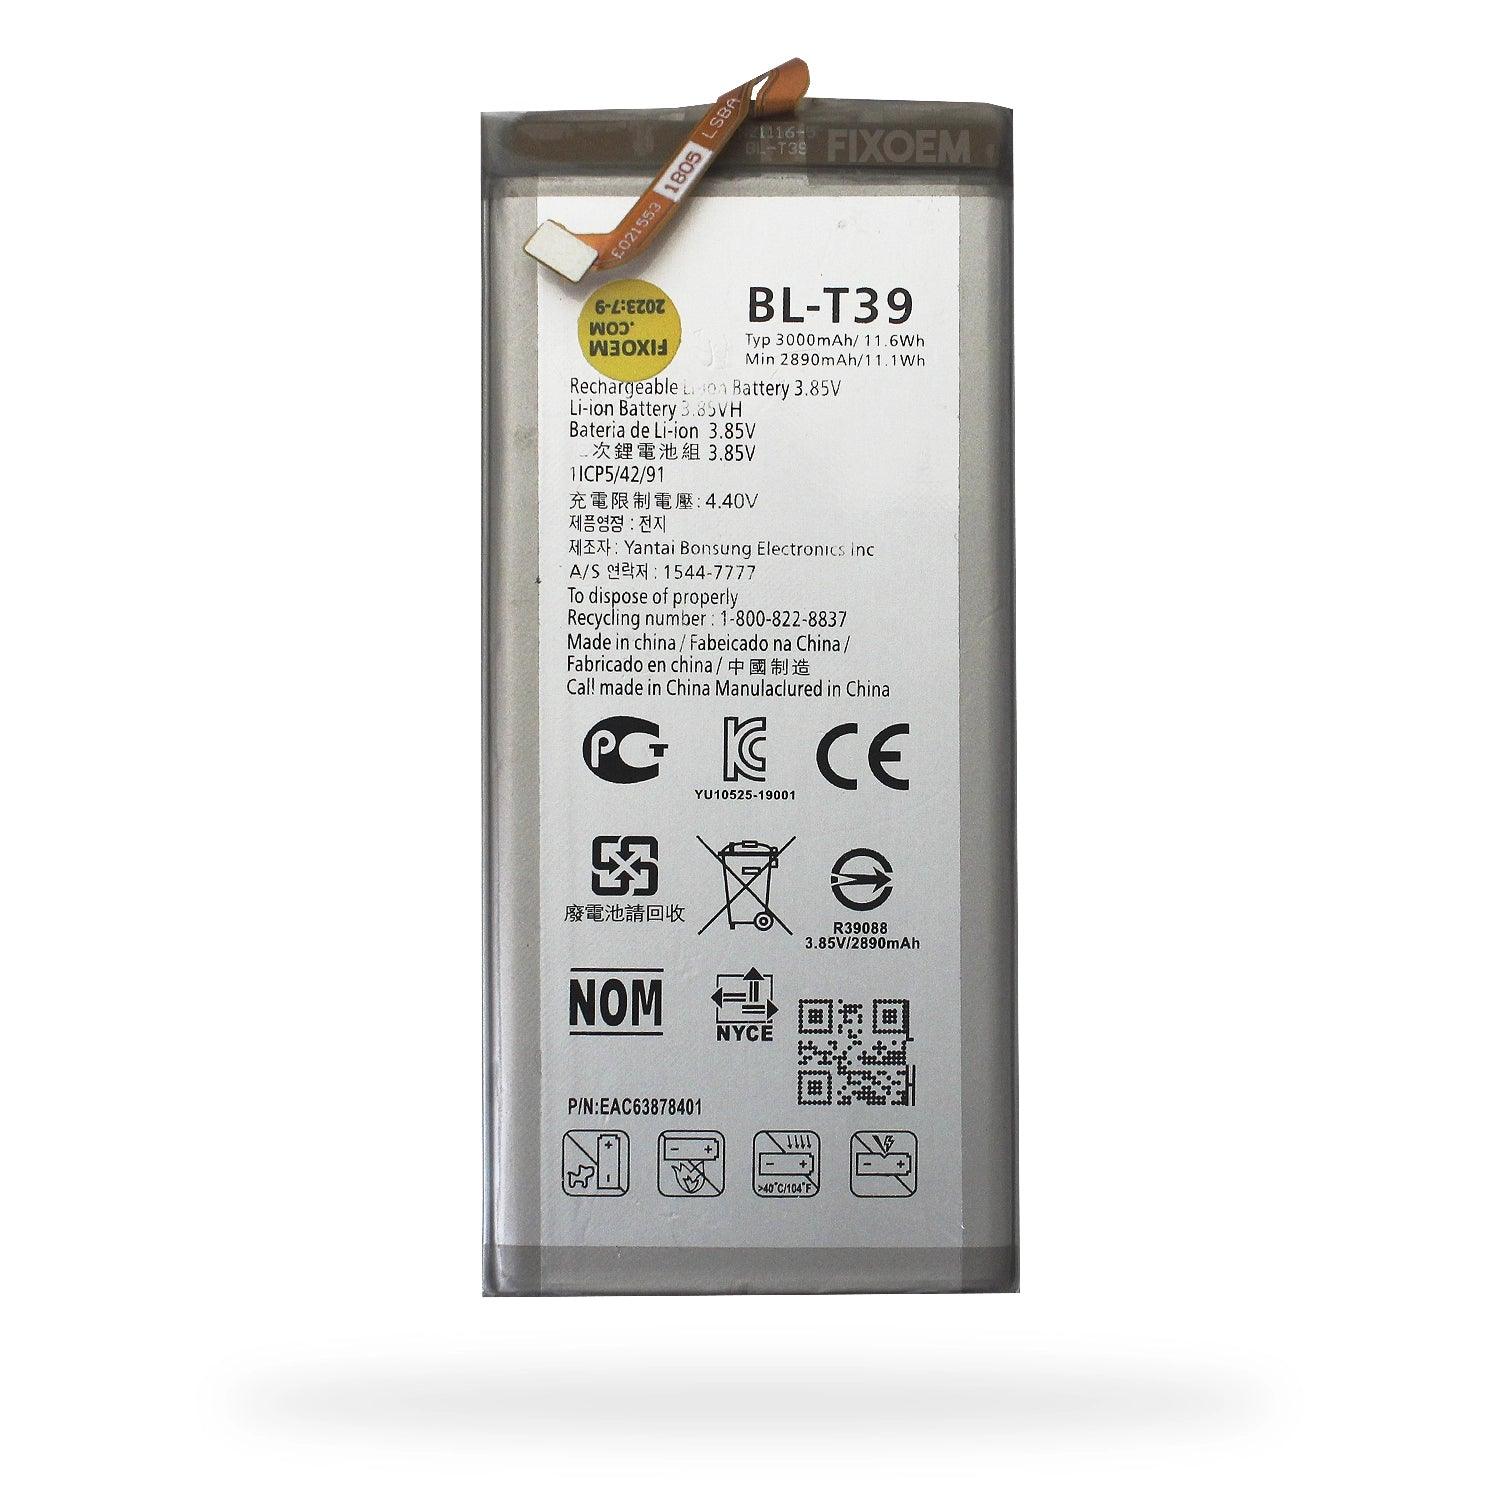 Bateria Lg K40 / G7 Thinq lmx420emw g710em Bl-T39. a solo $ 120.00 Refaccion y puestos celulares, refurbish y microelectronica.- FixOEM